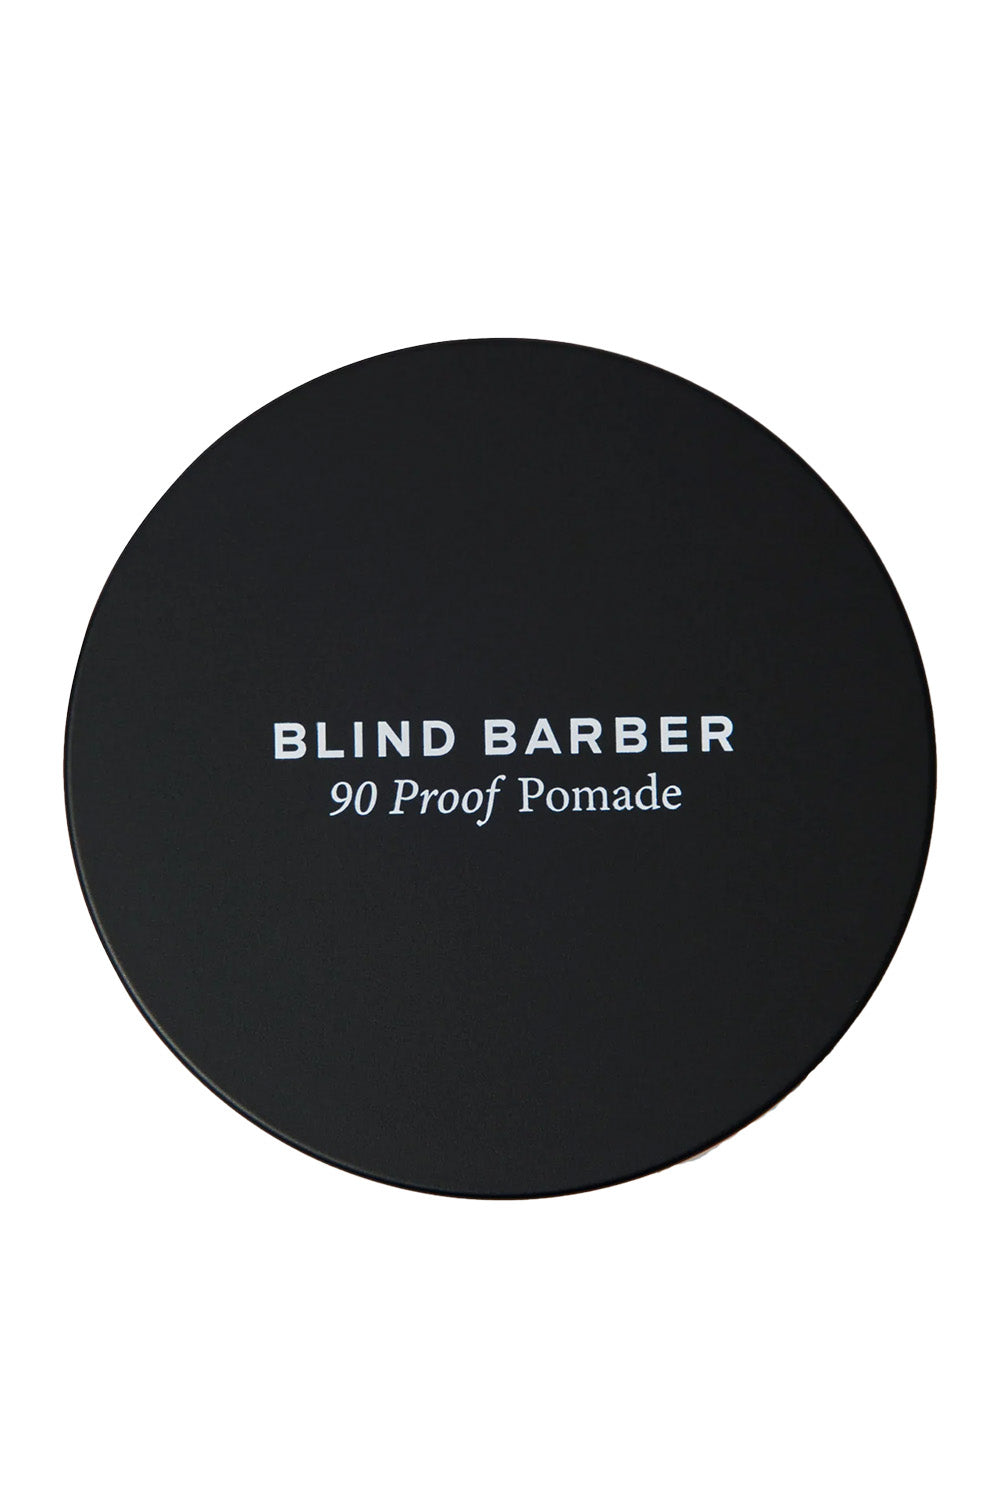 Blind Barber - 90 Proof Matte Pomade - Top